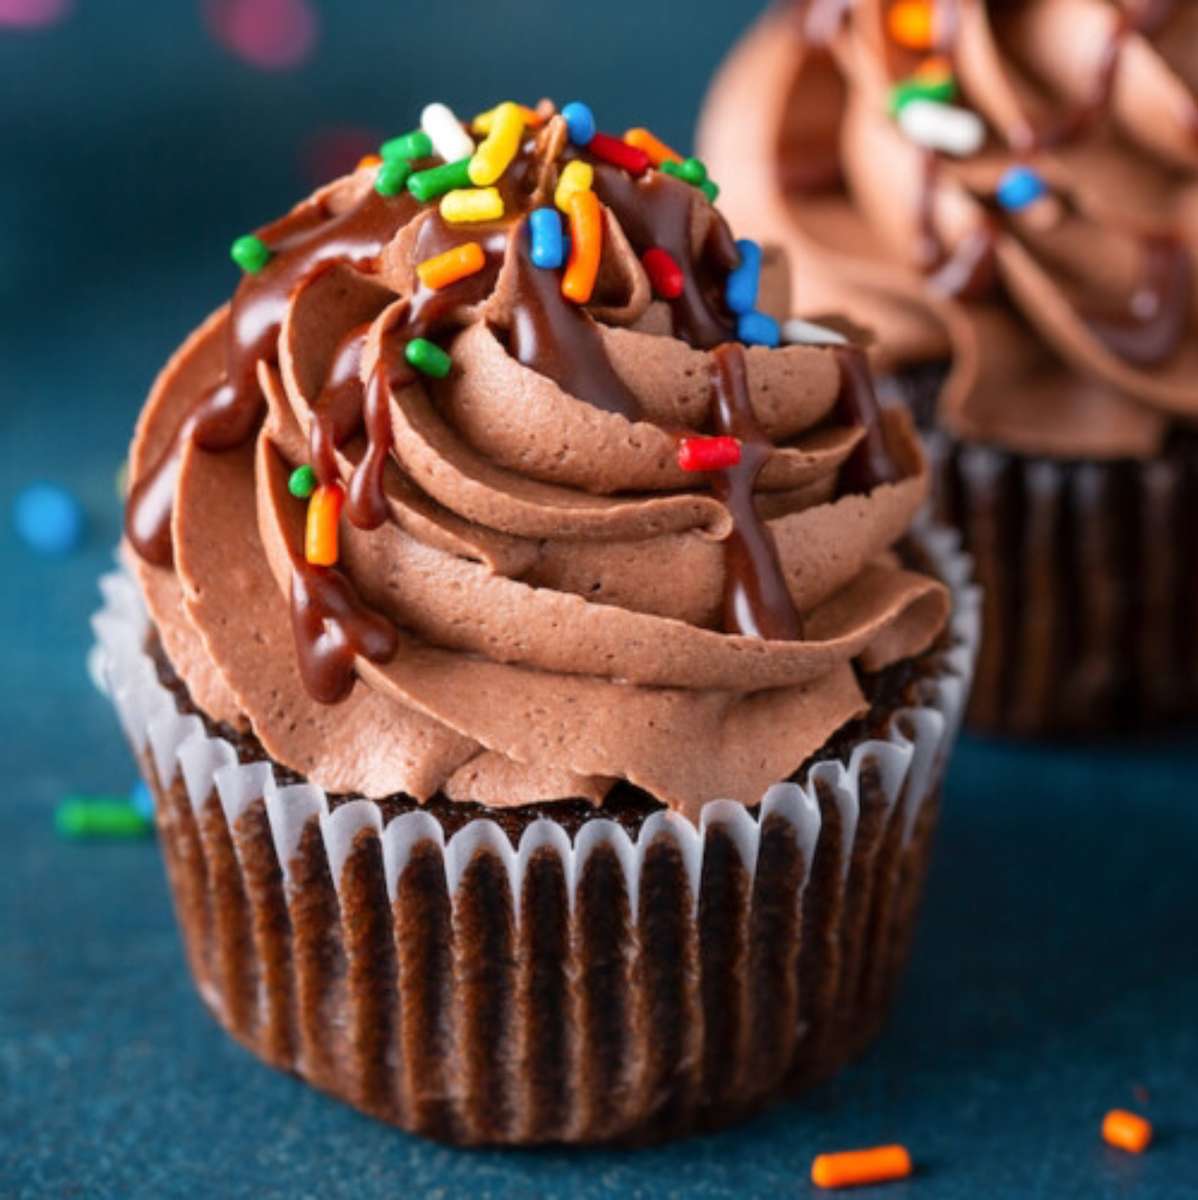 I migliori cupcakes al cioccolato❤️❤️❤️ puzzle online